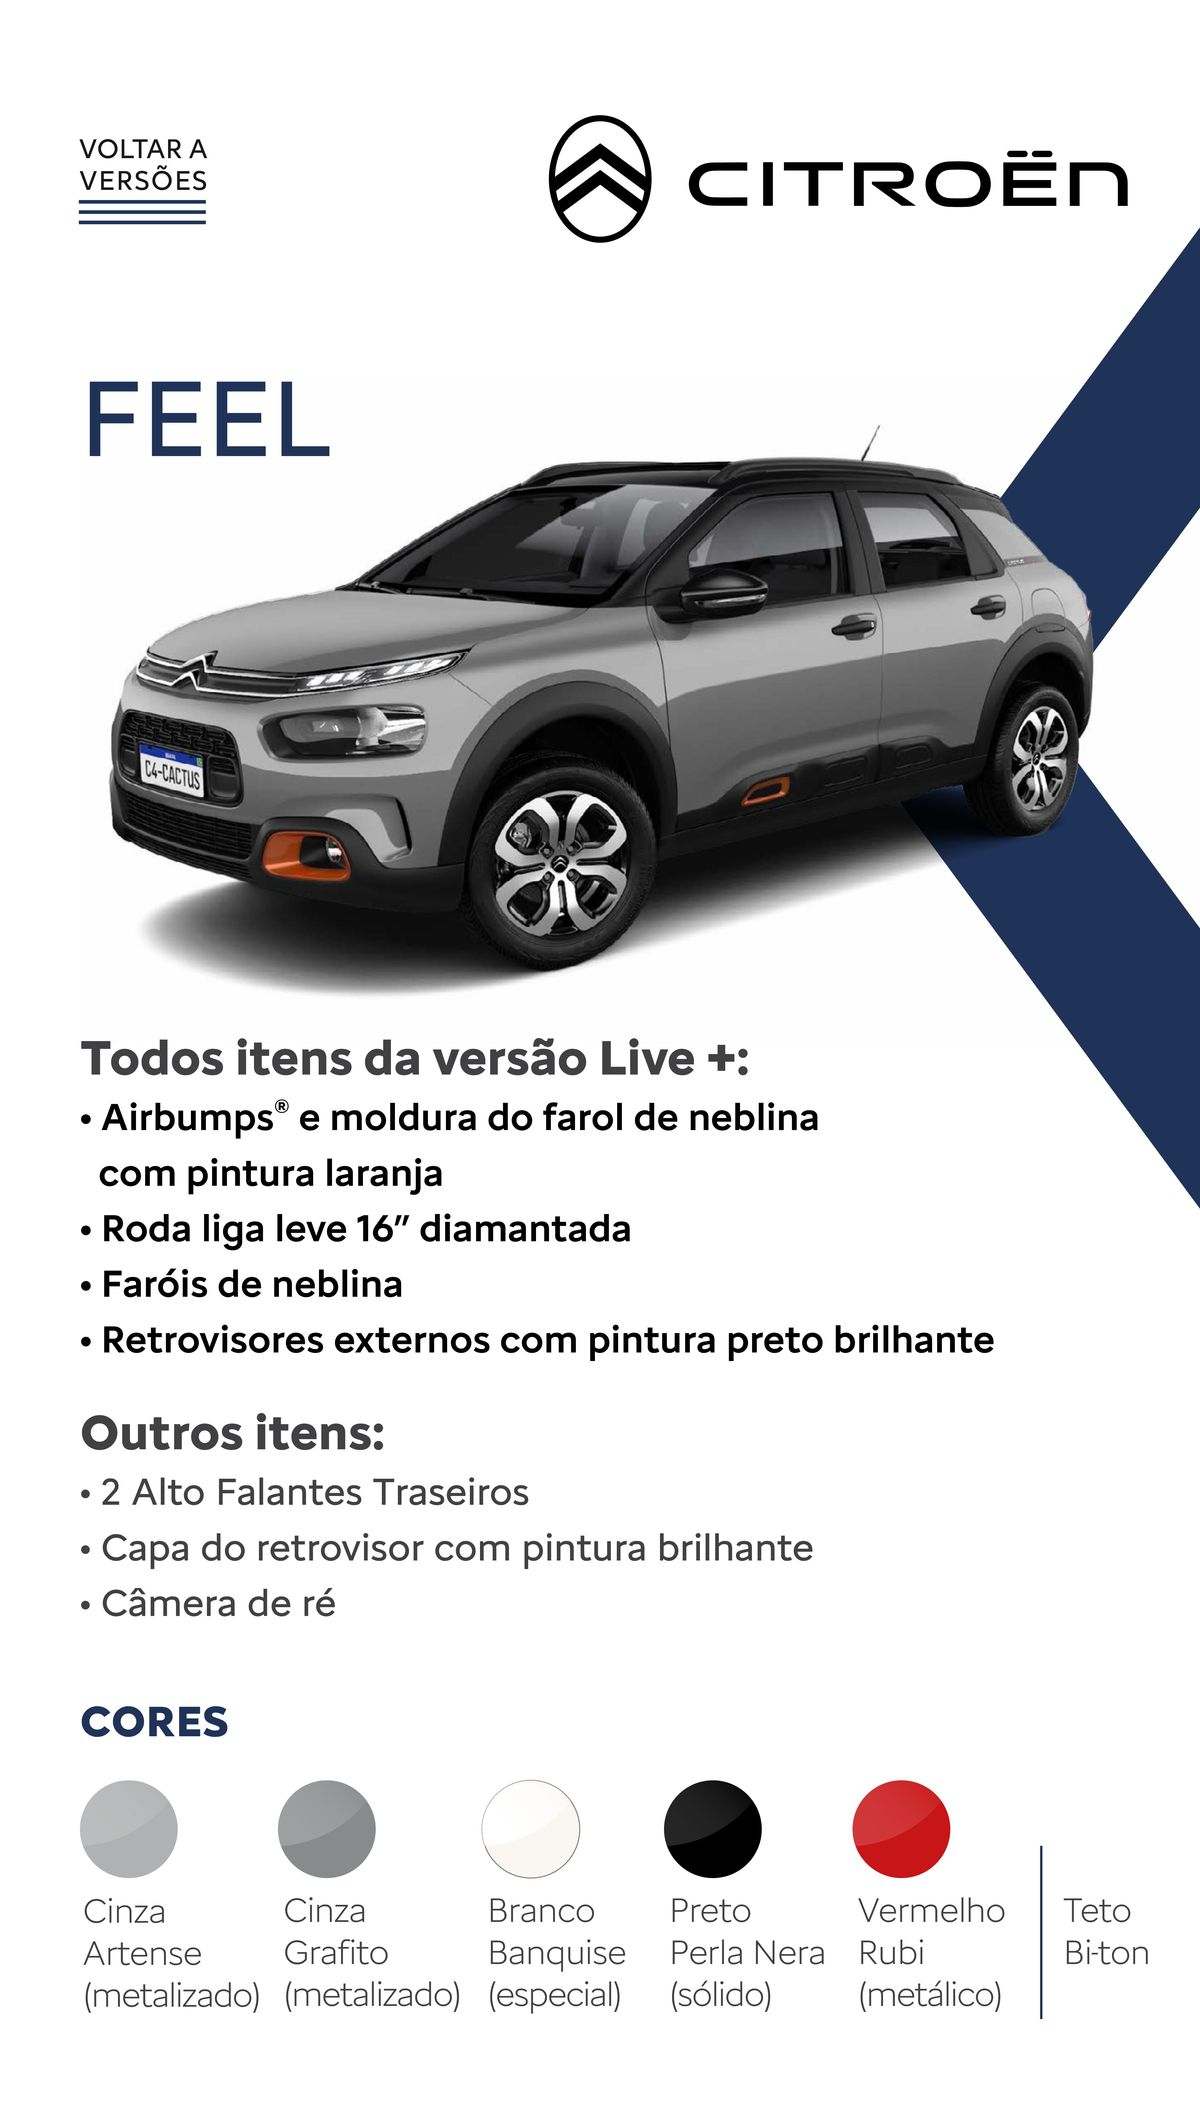 Detalhes da Versão Live + do Citroën